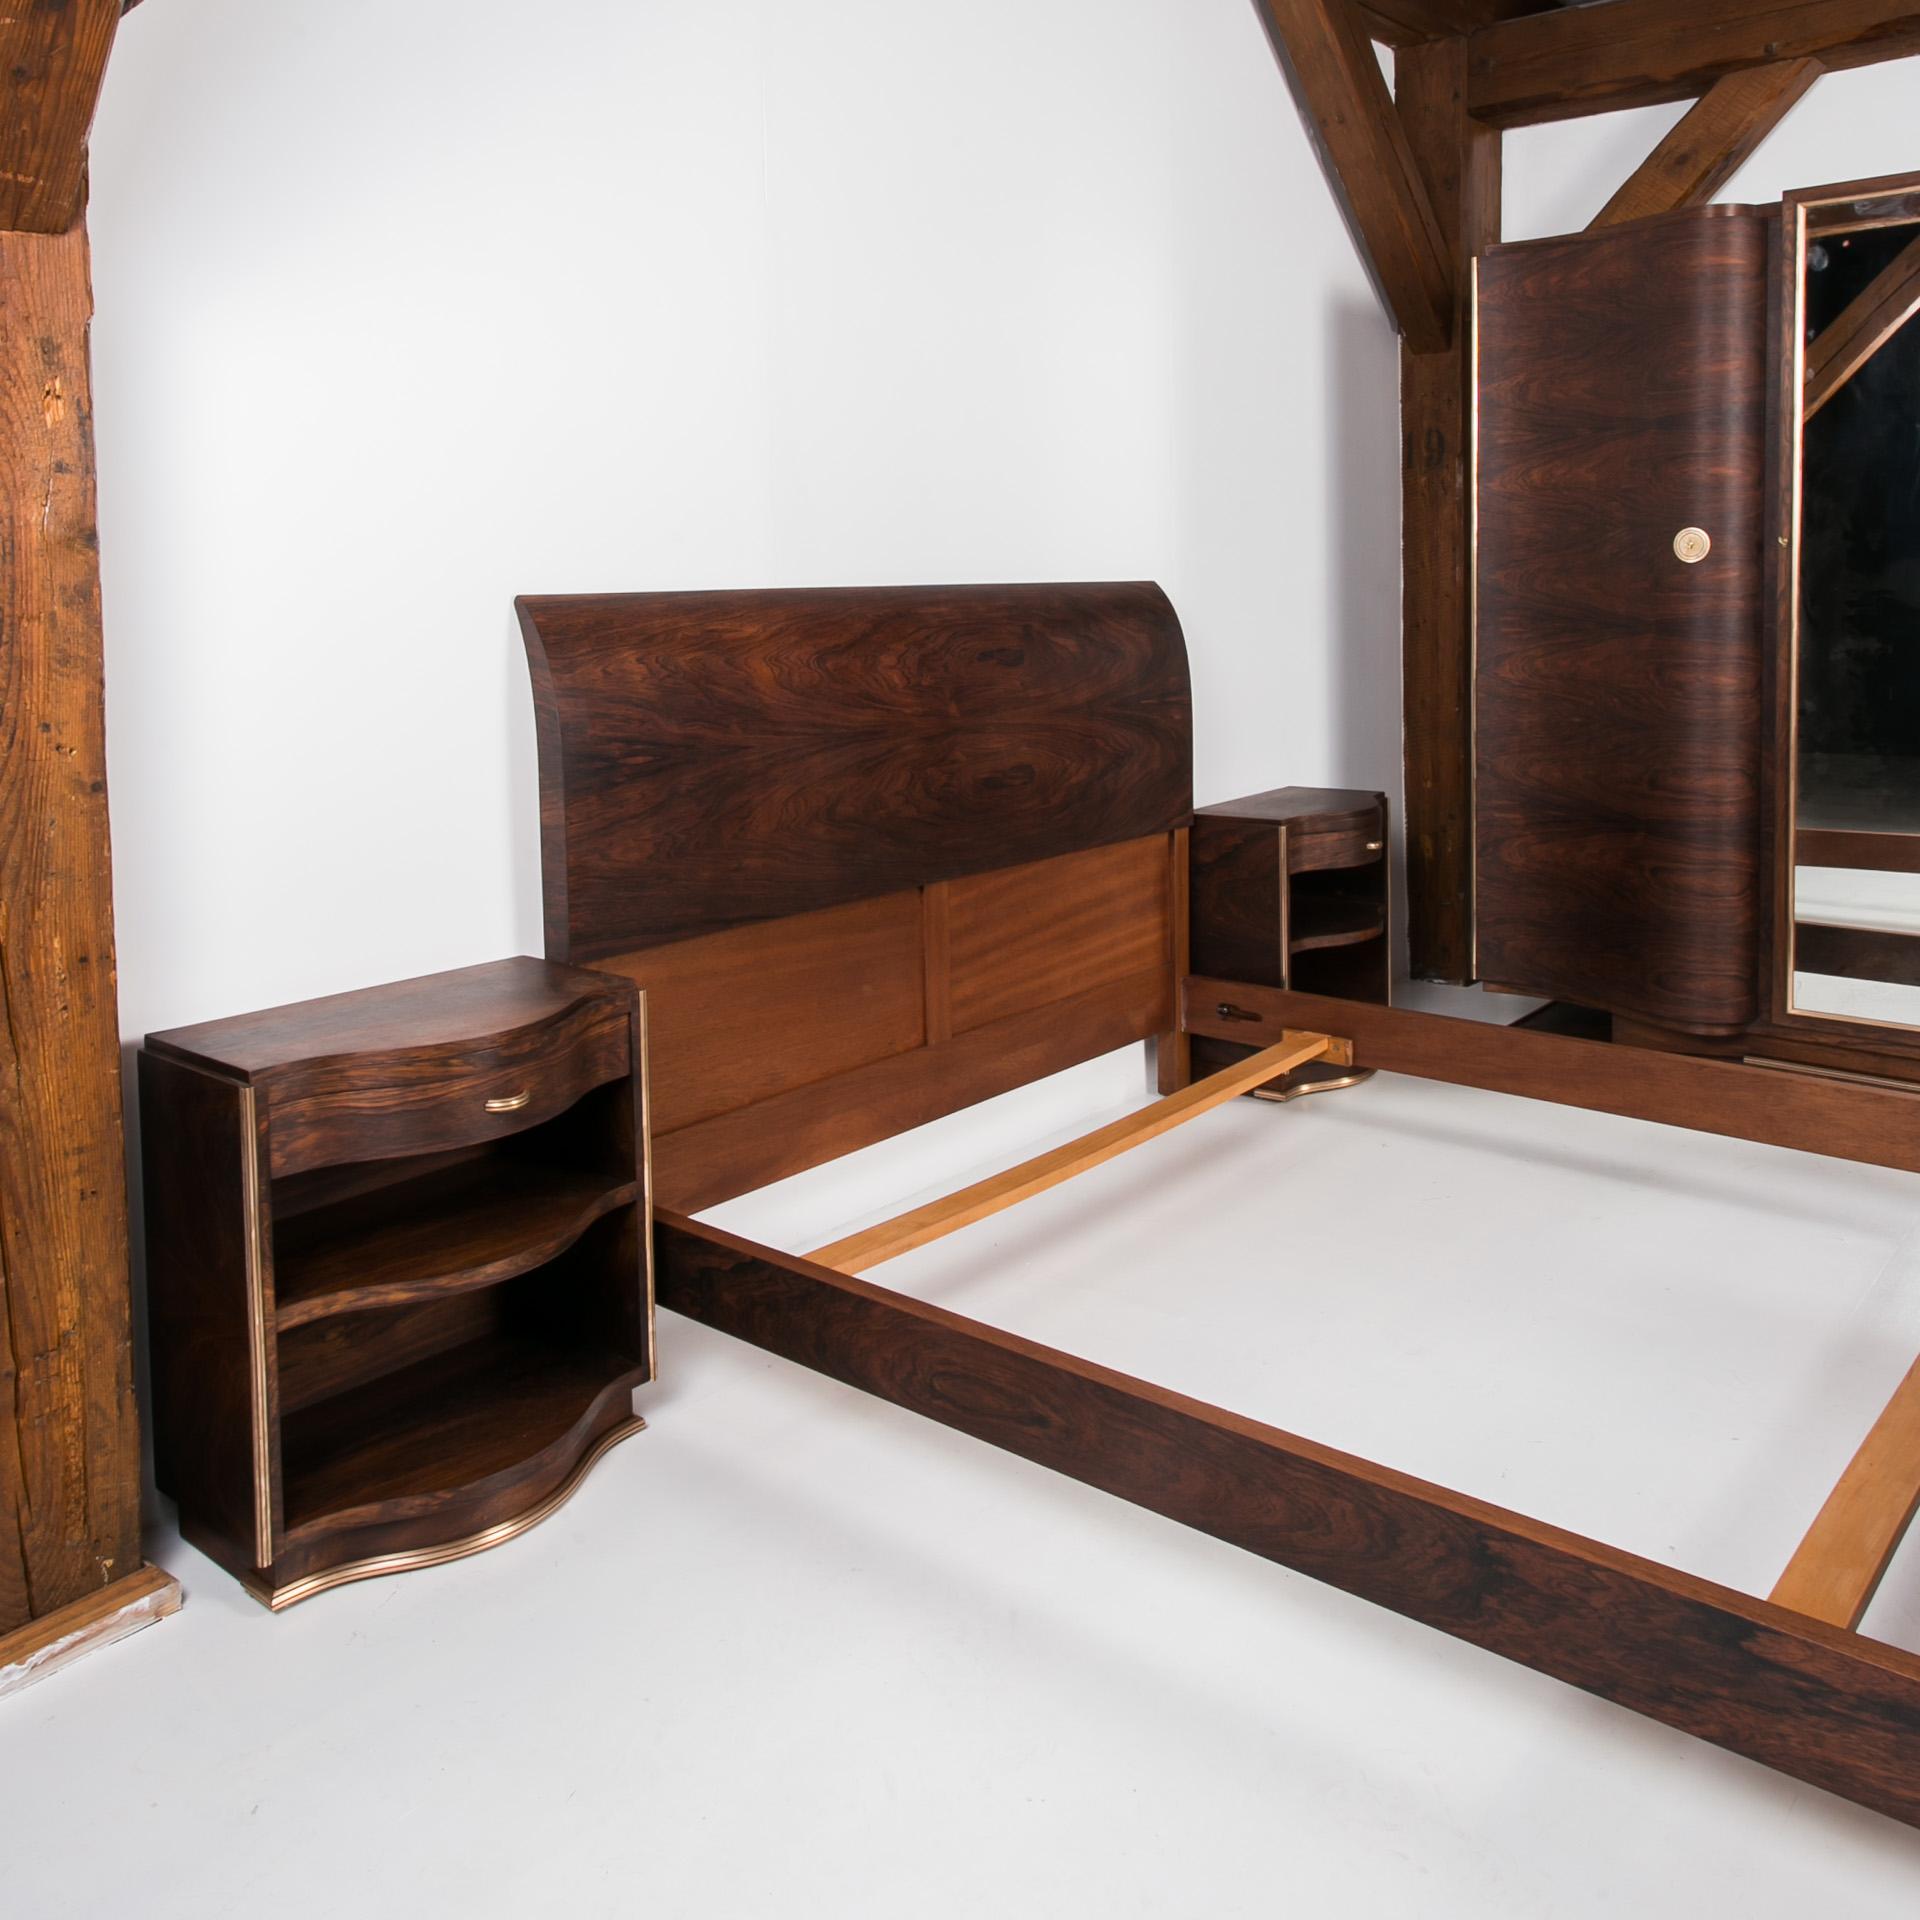 1920s bedroom furniture